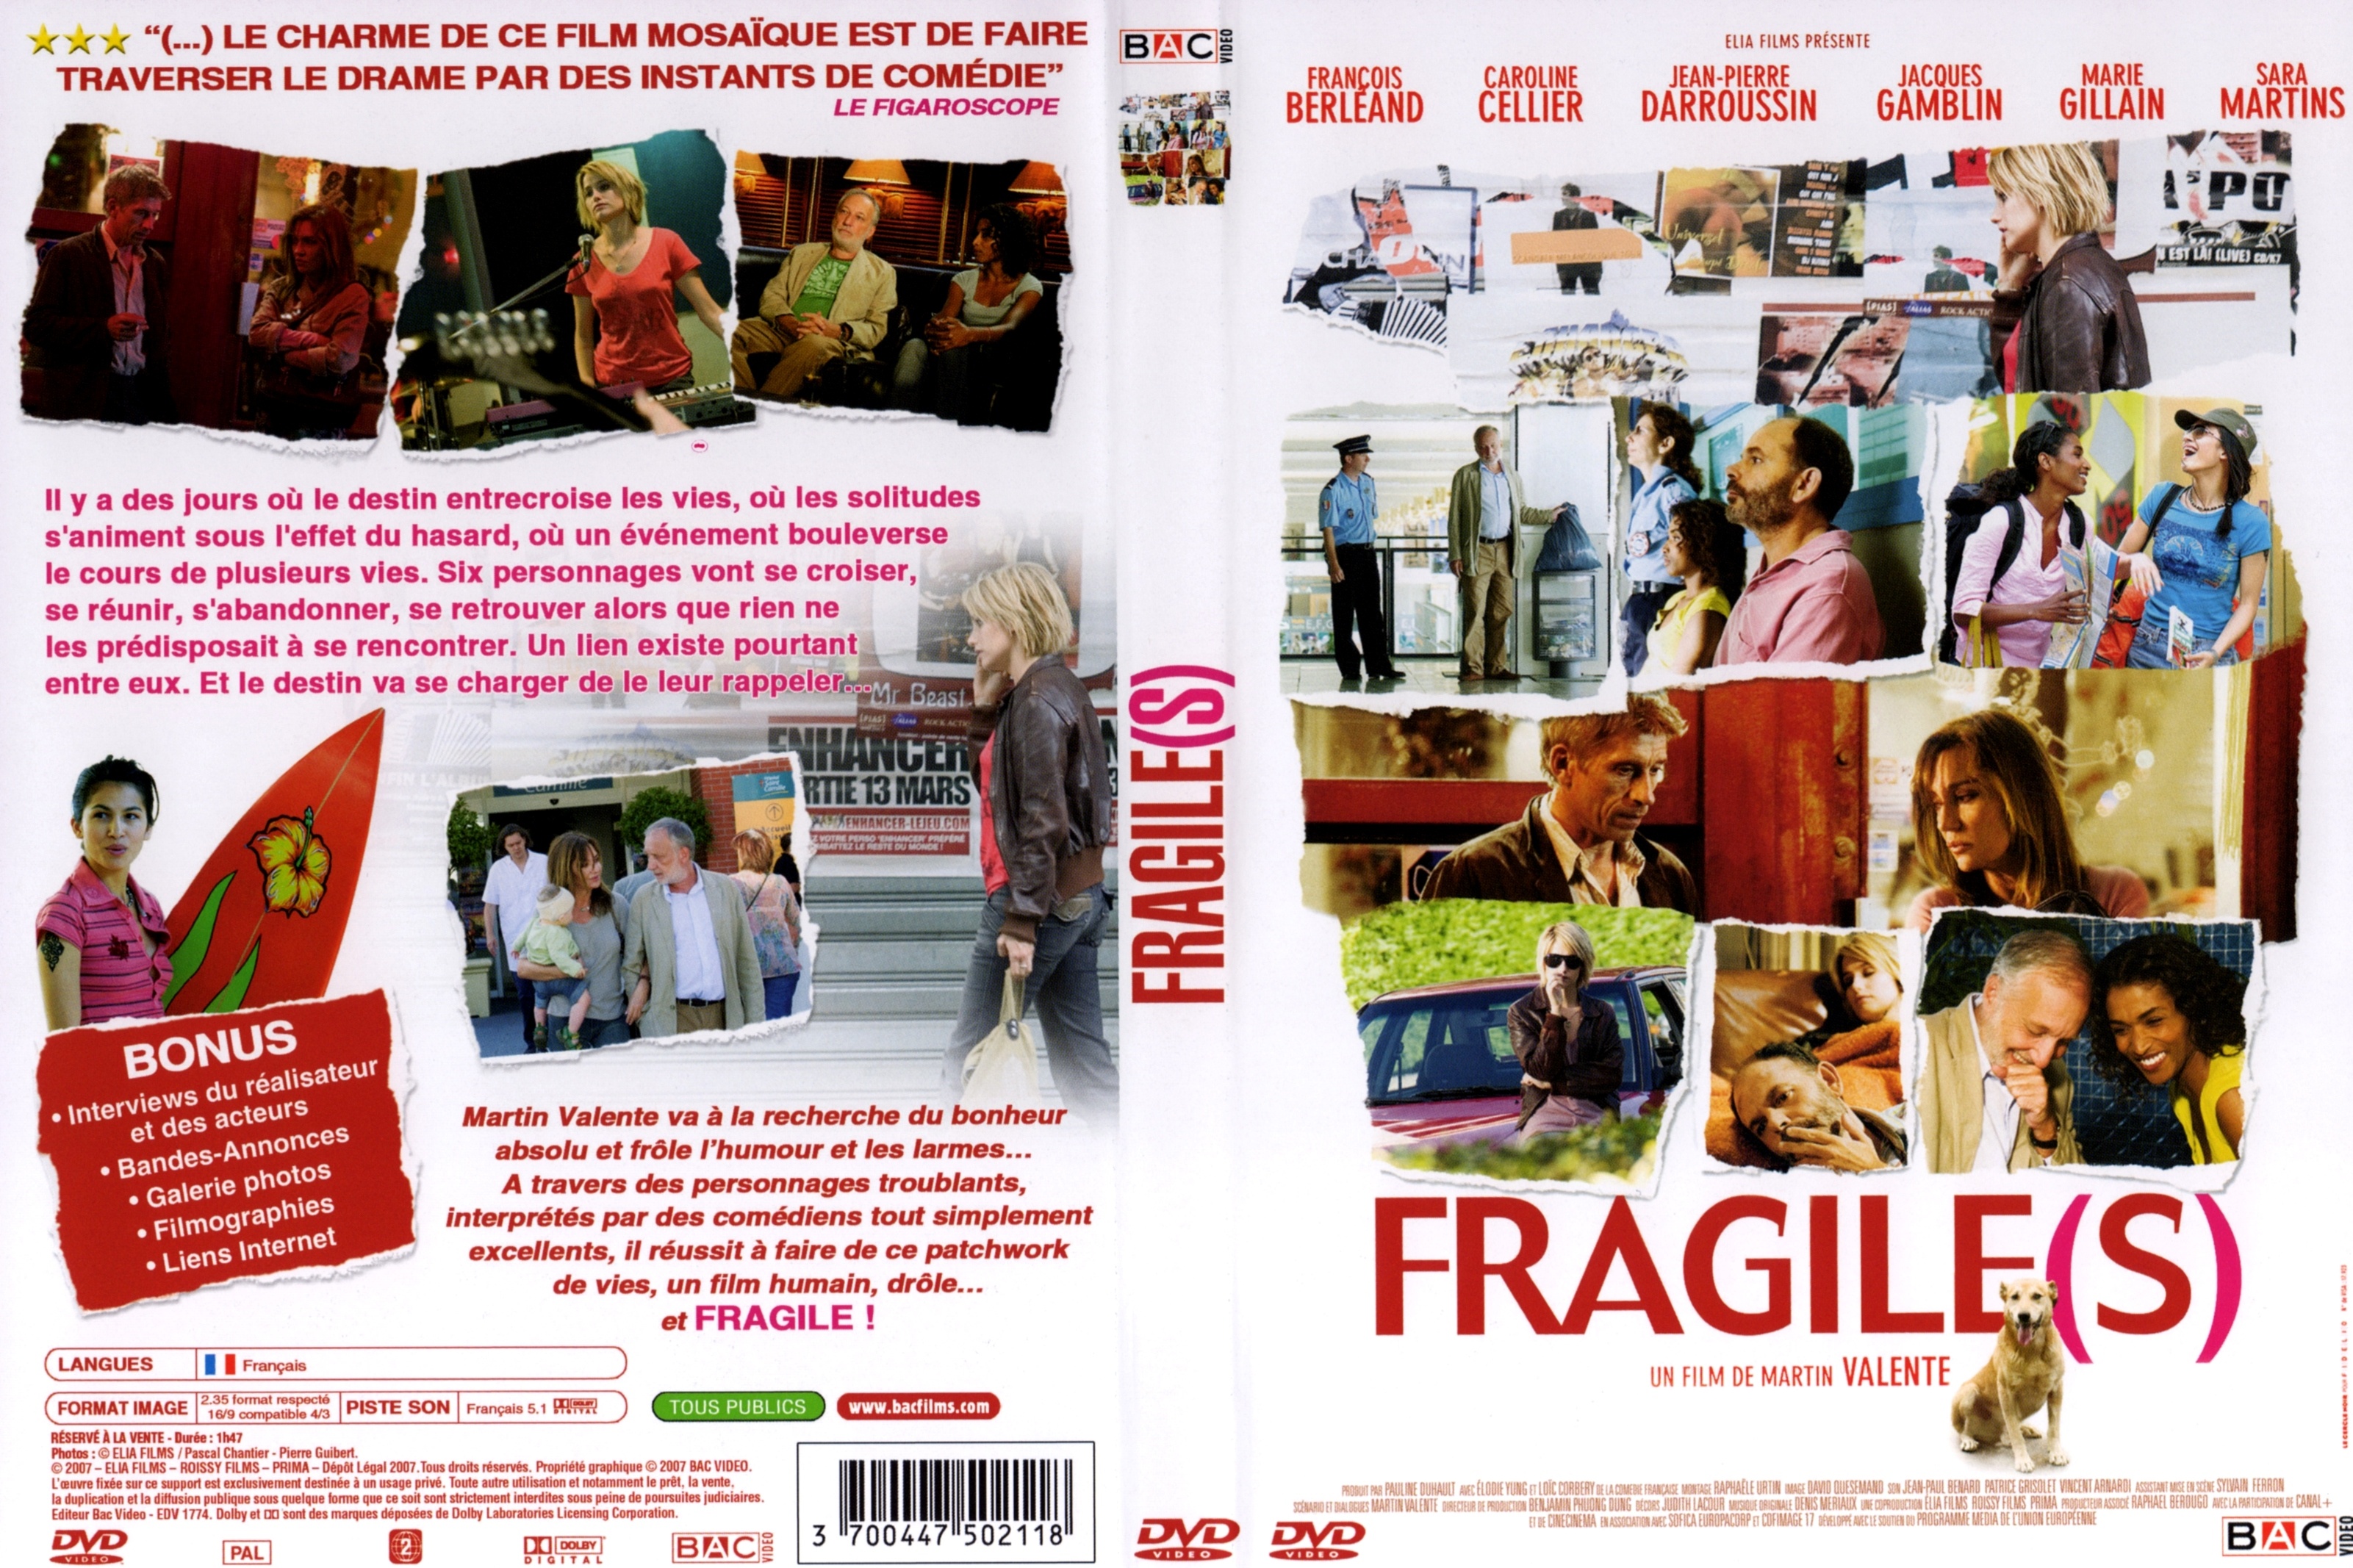 Jaquette DVD Fragile(s)